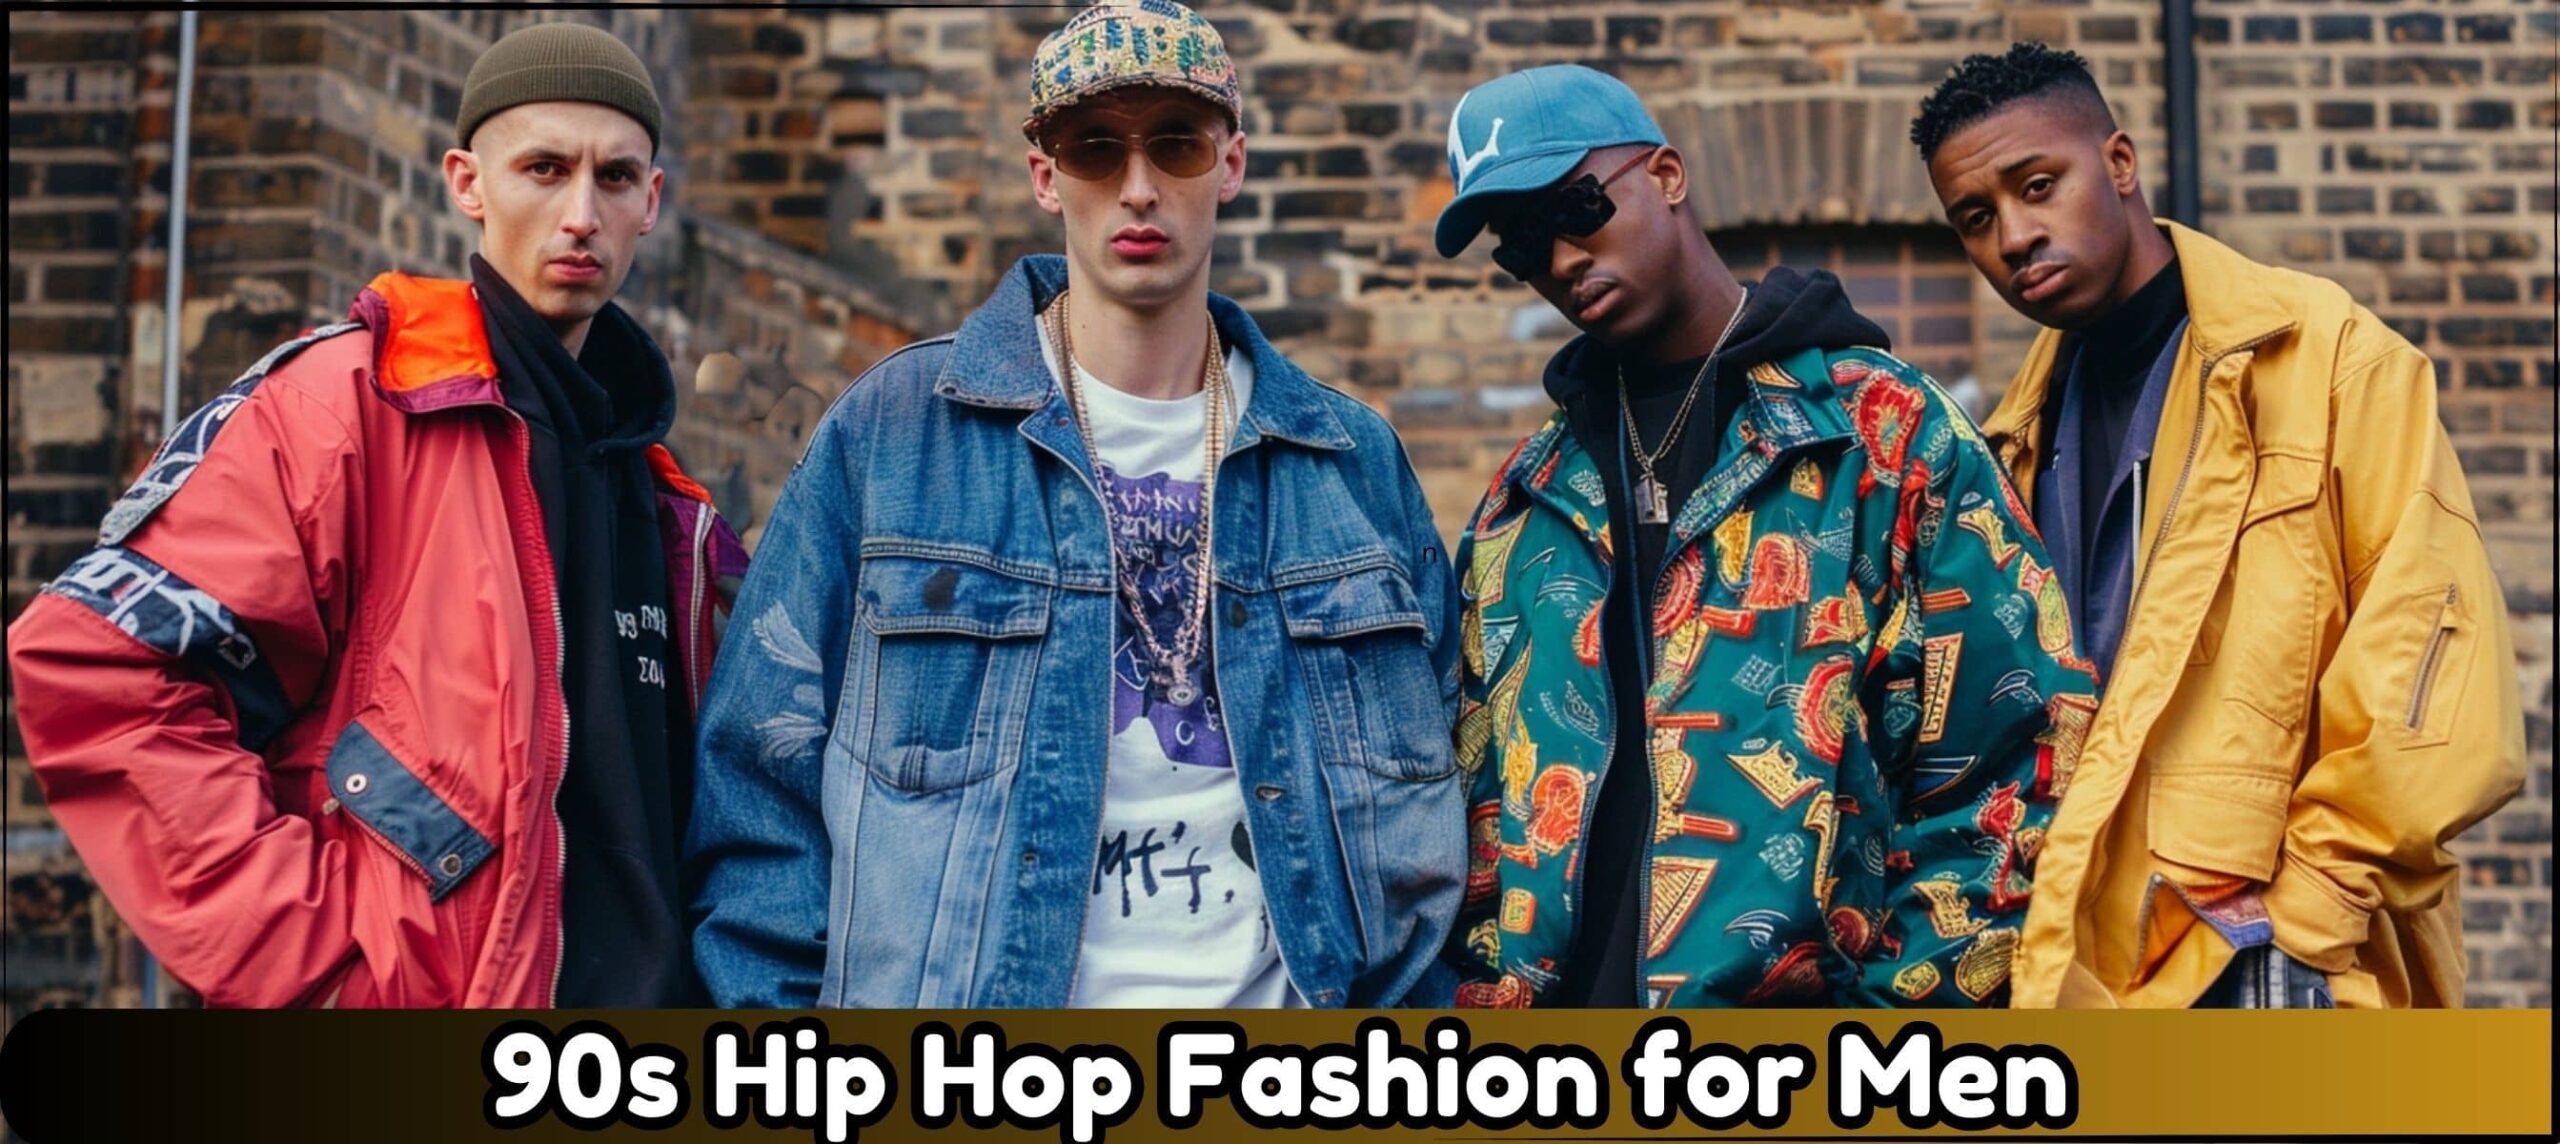 90s Hip Hop Fashion Ideas for Men